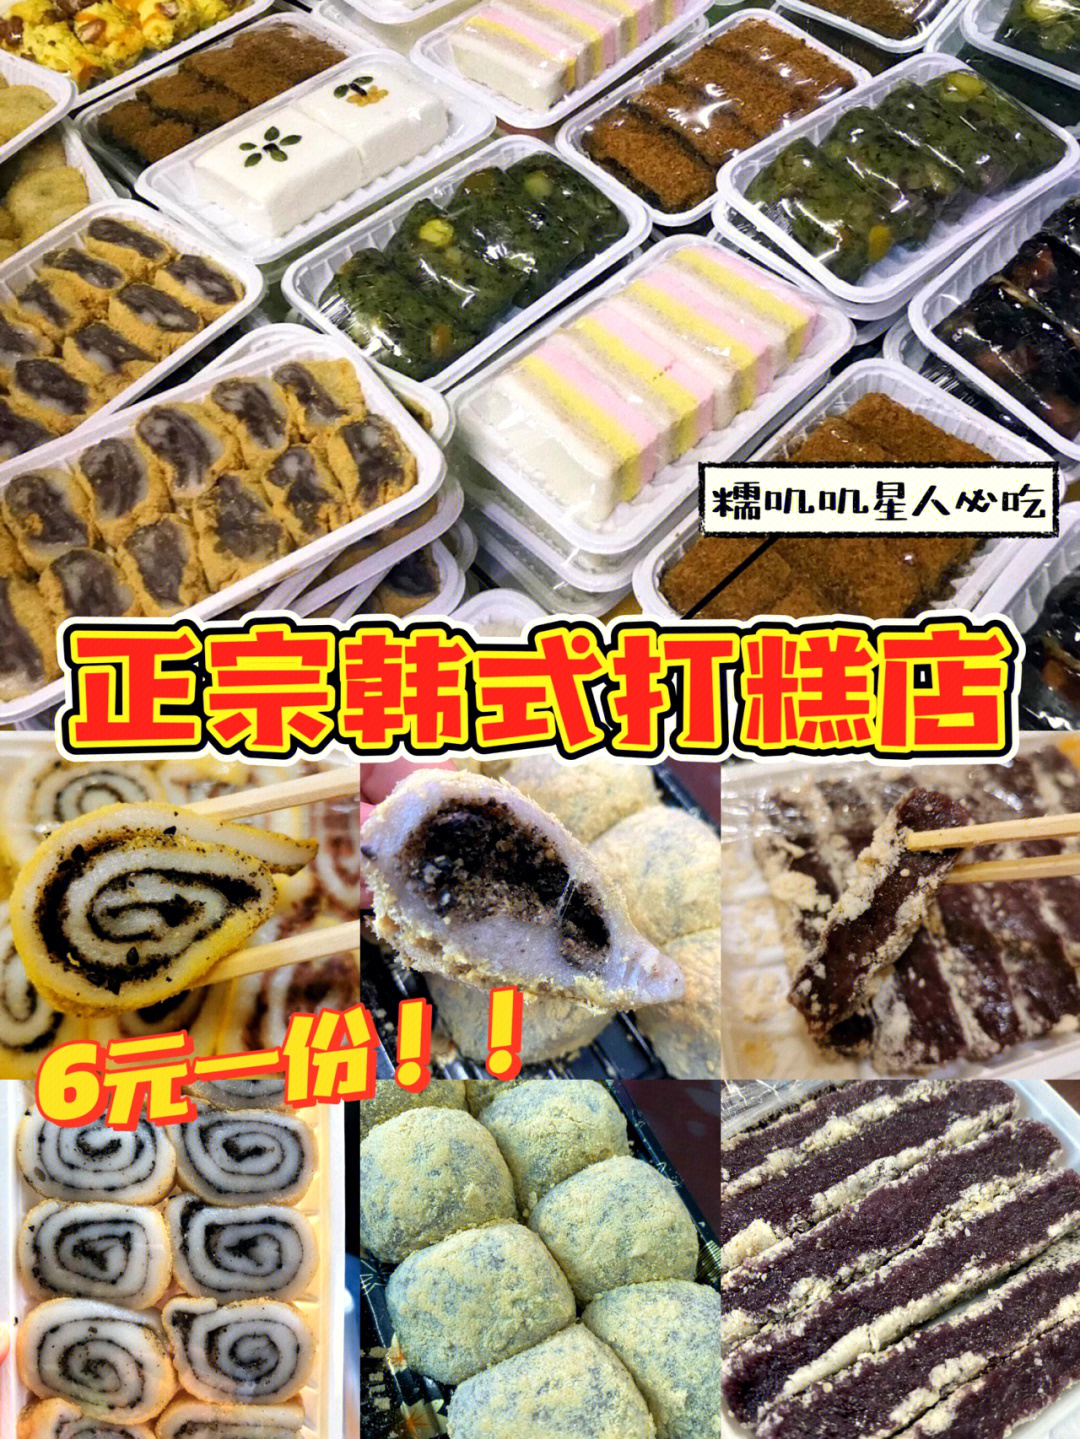 长春超正宗韩式打糕店糯叽叽6元一盒